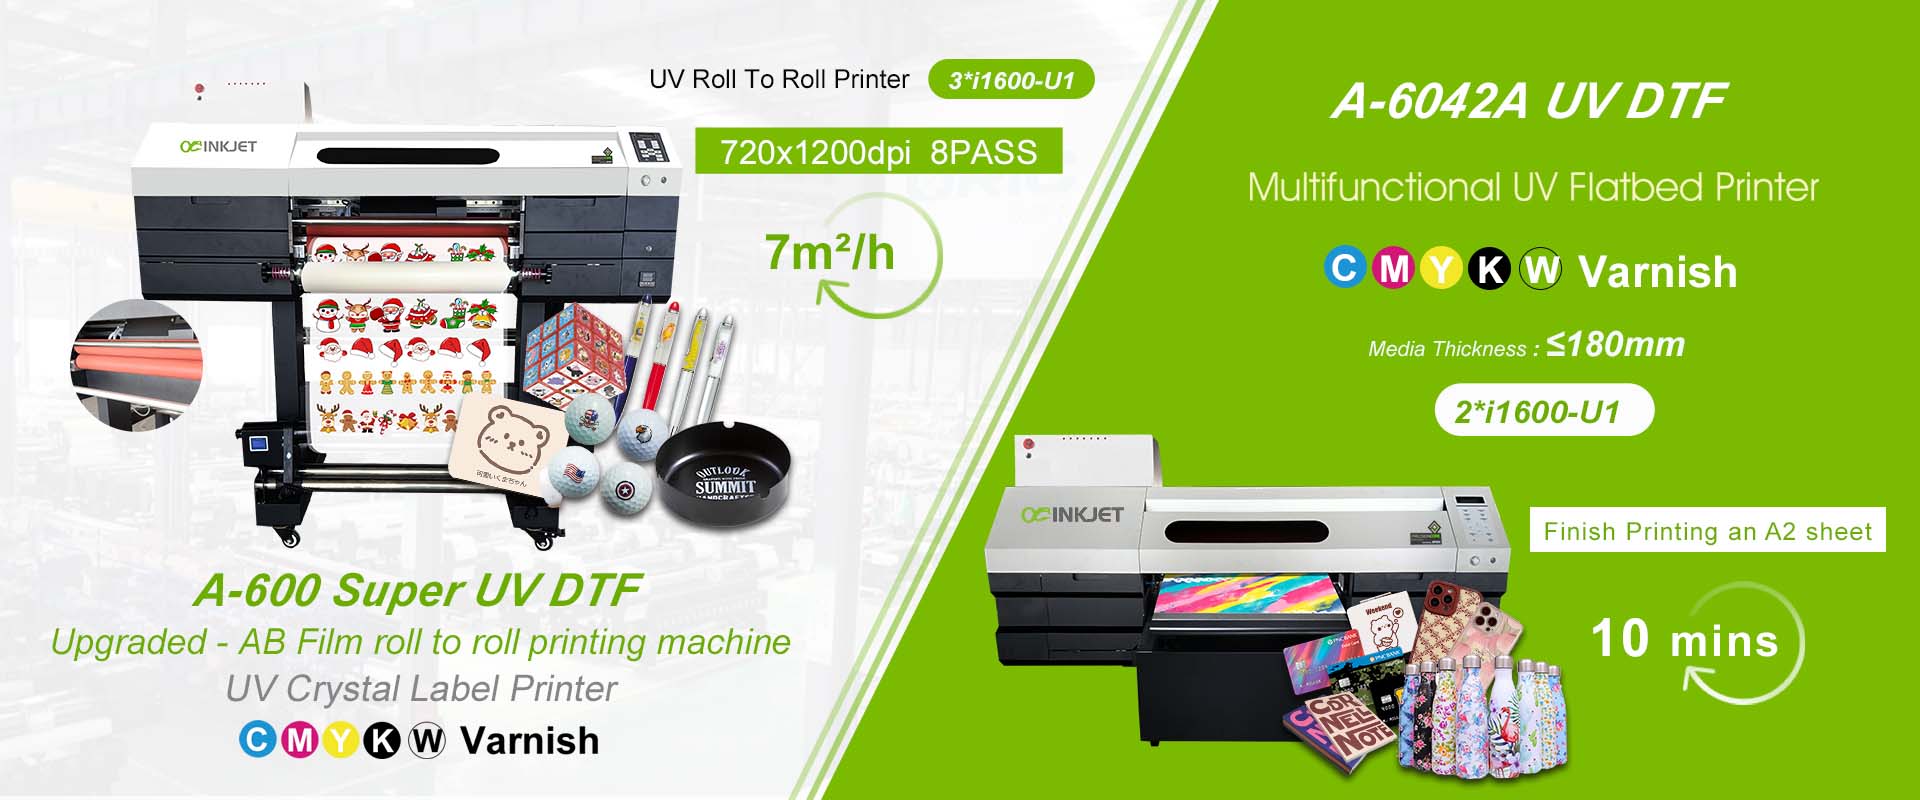 uv dtf printer manufacturer